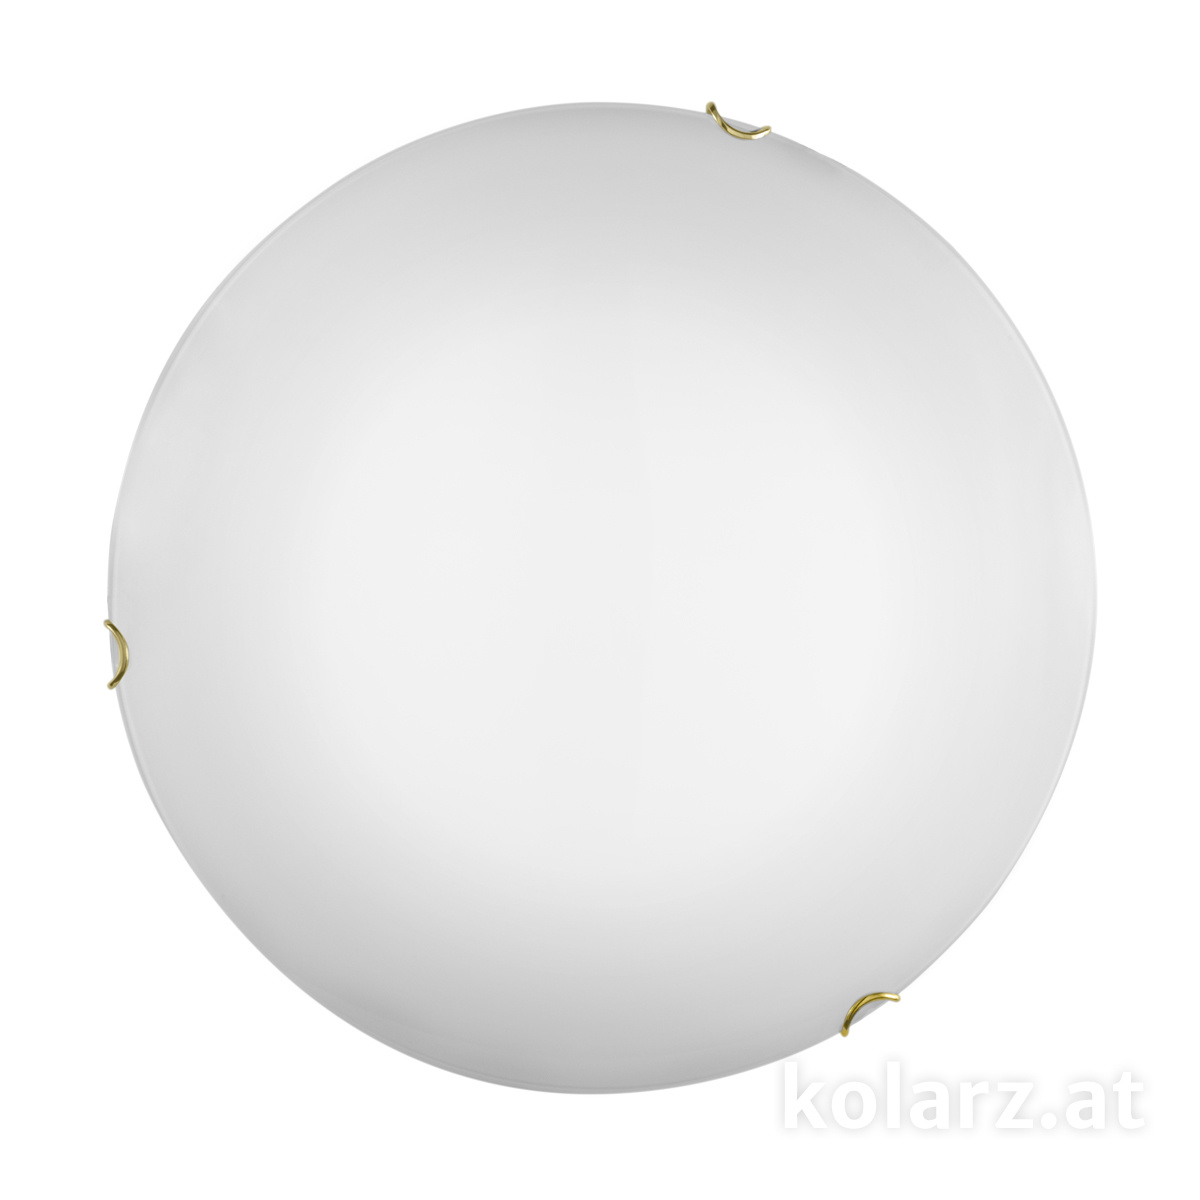 KOLARZ Leuchten - A1306.13.3 - Deckenleuchte MOON 50 cm